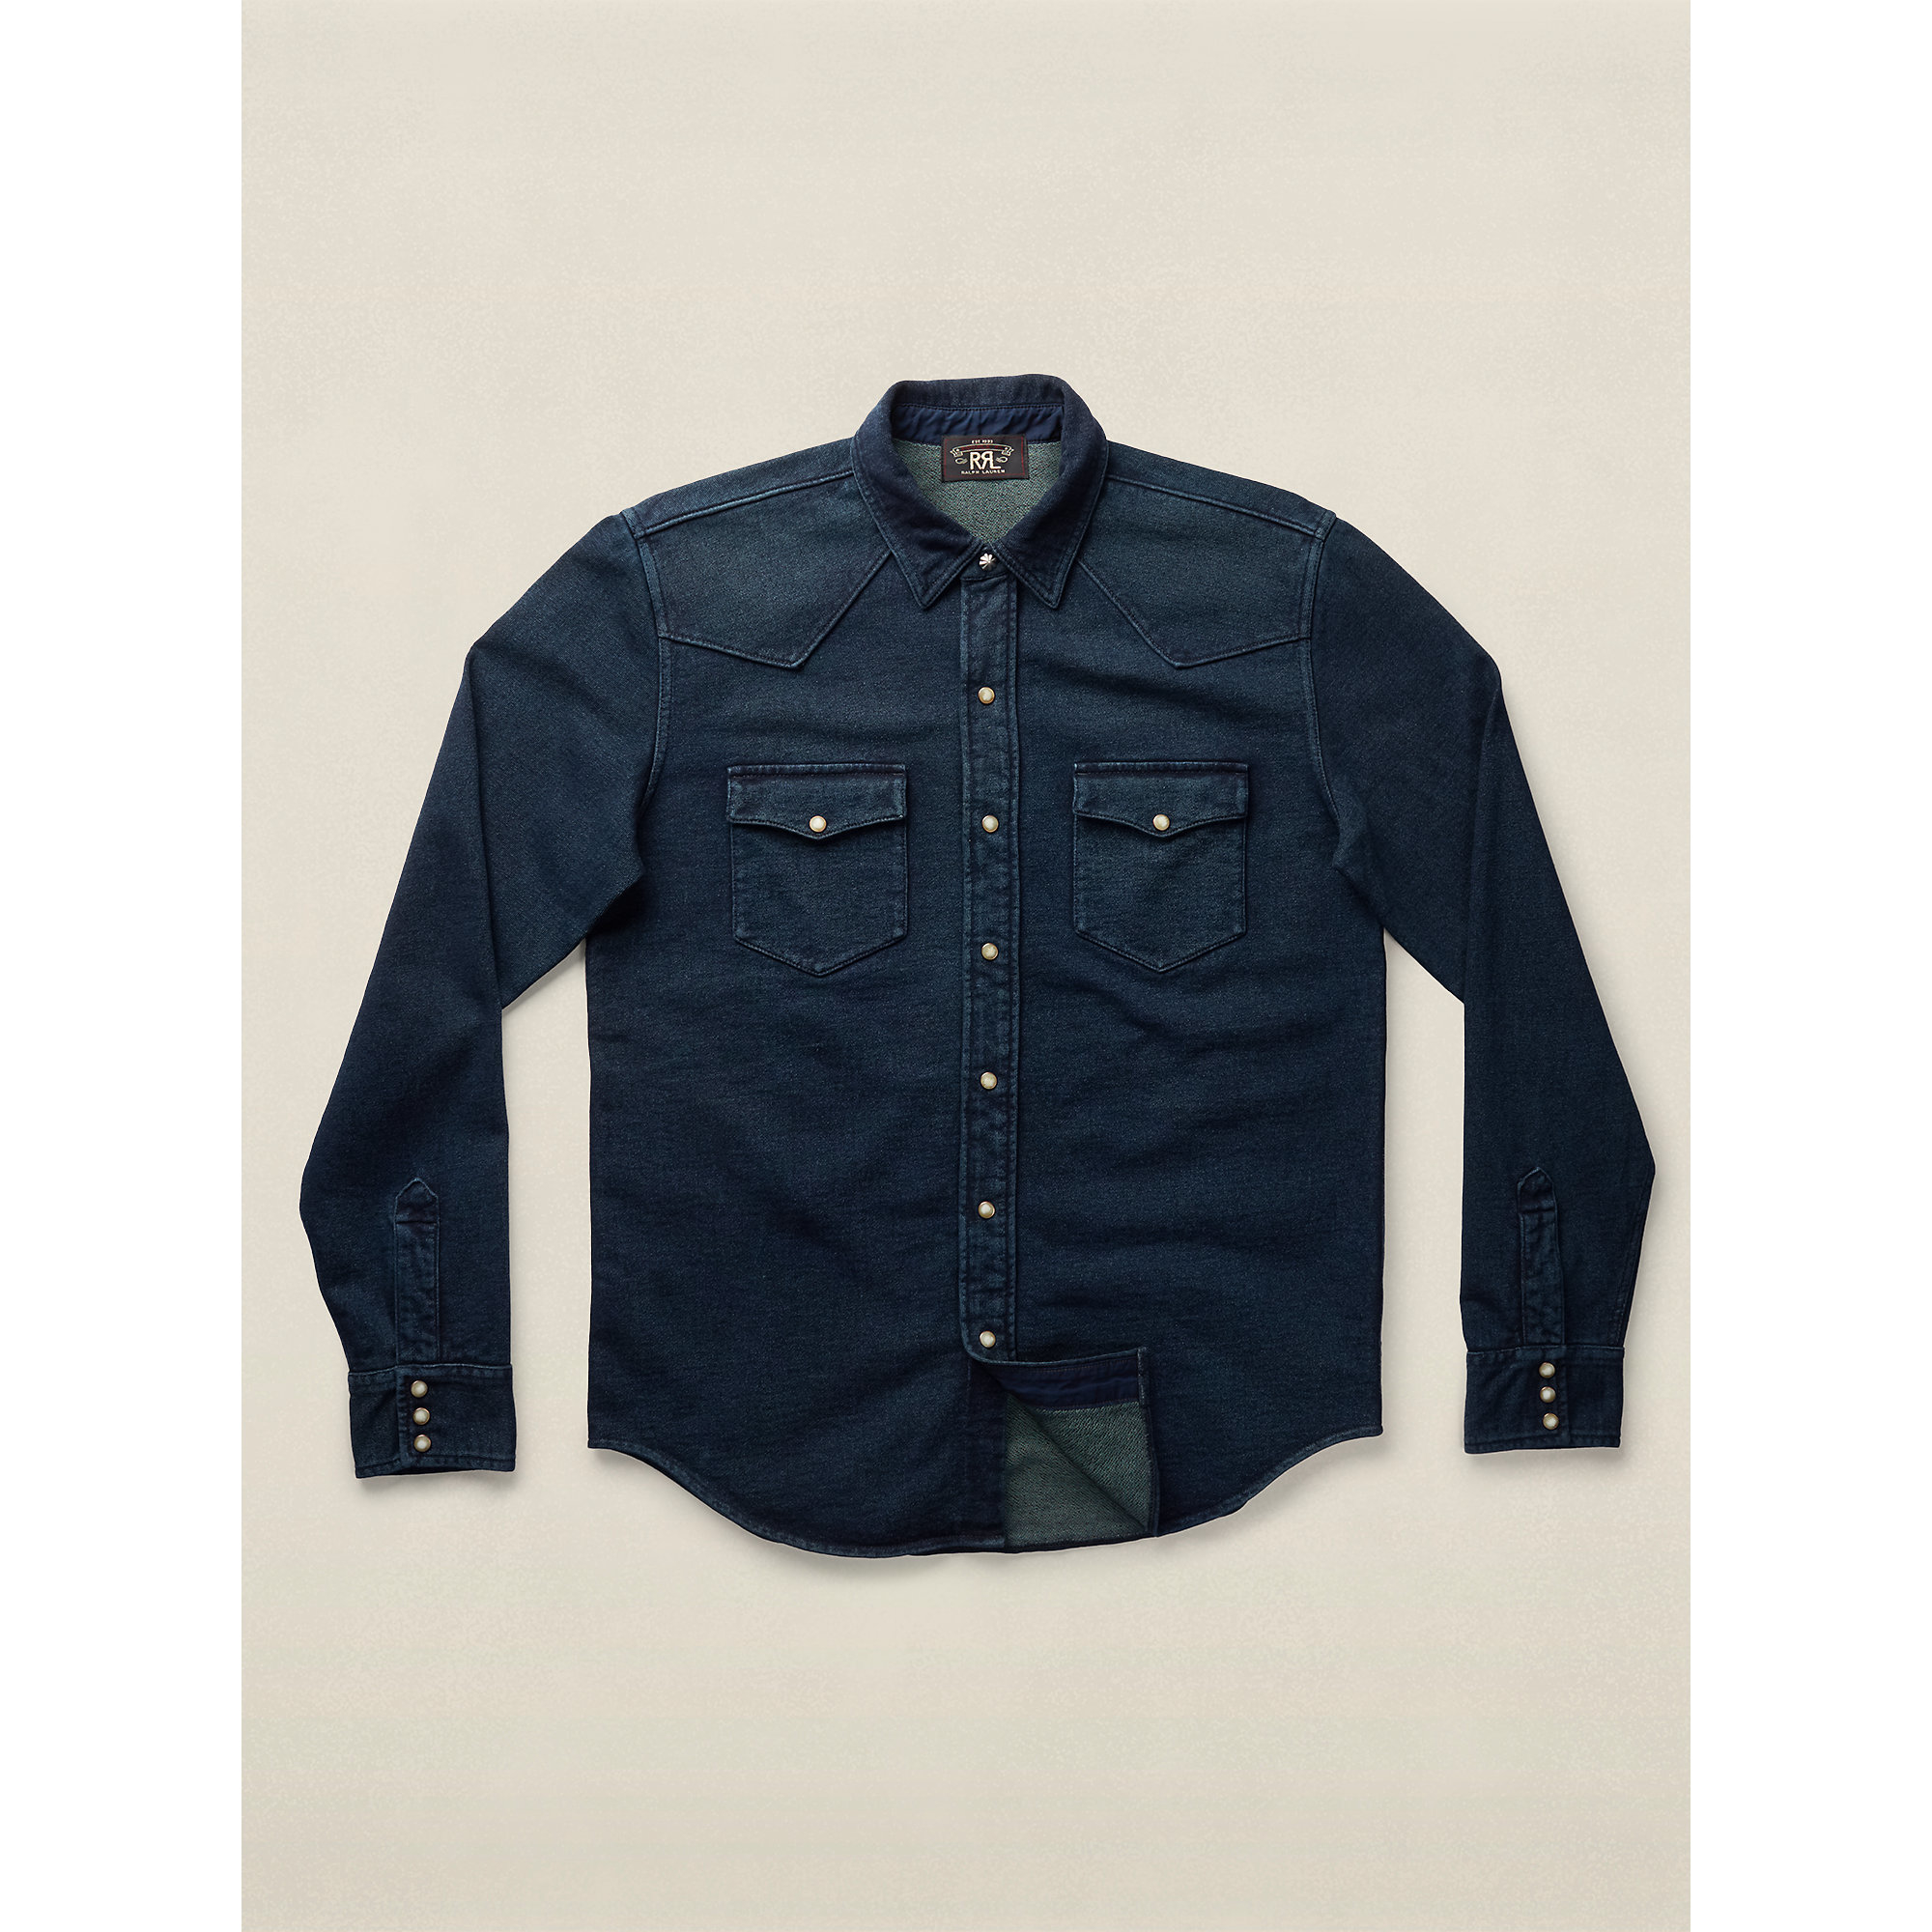 RRL Cotton Terry Western Shirt in Dark Blue Indigo (Blue) for Men - Lyst